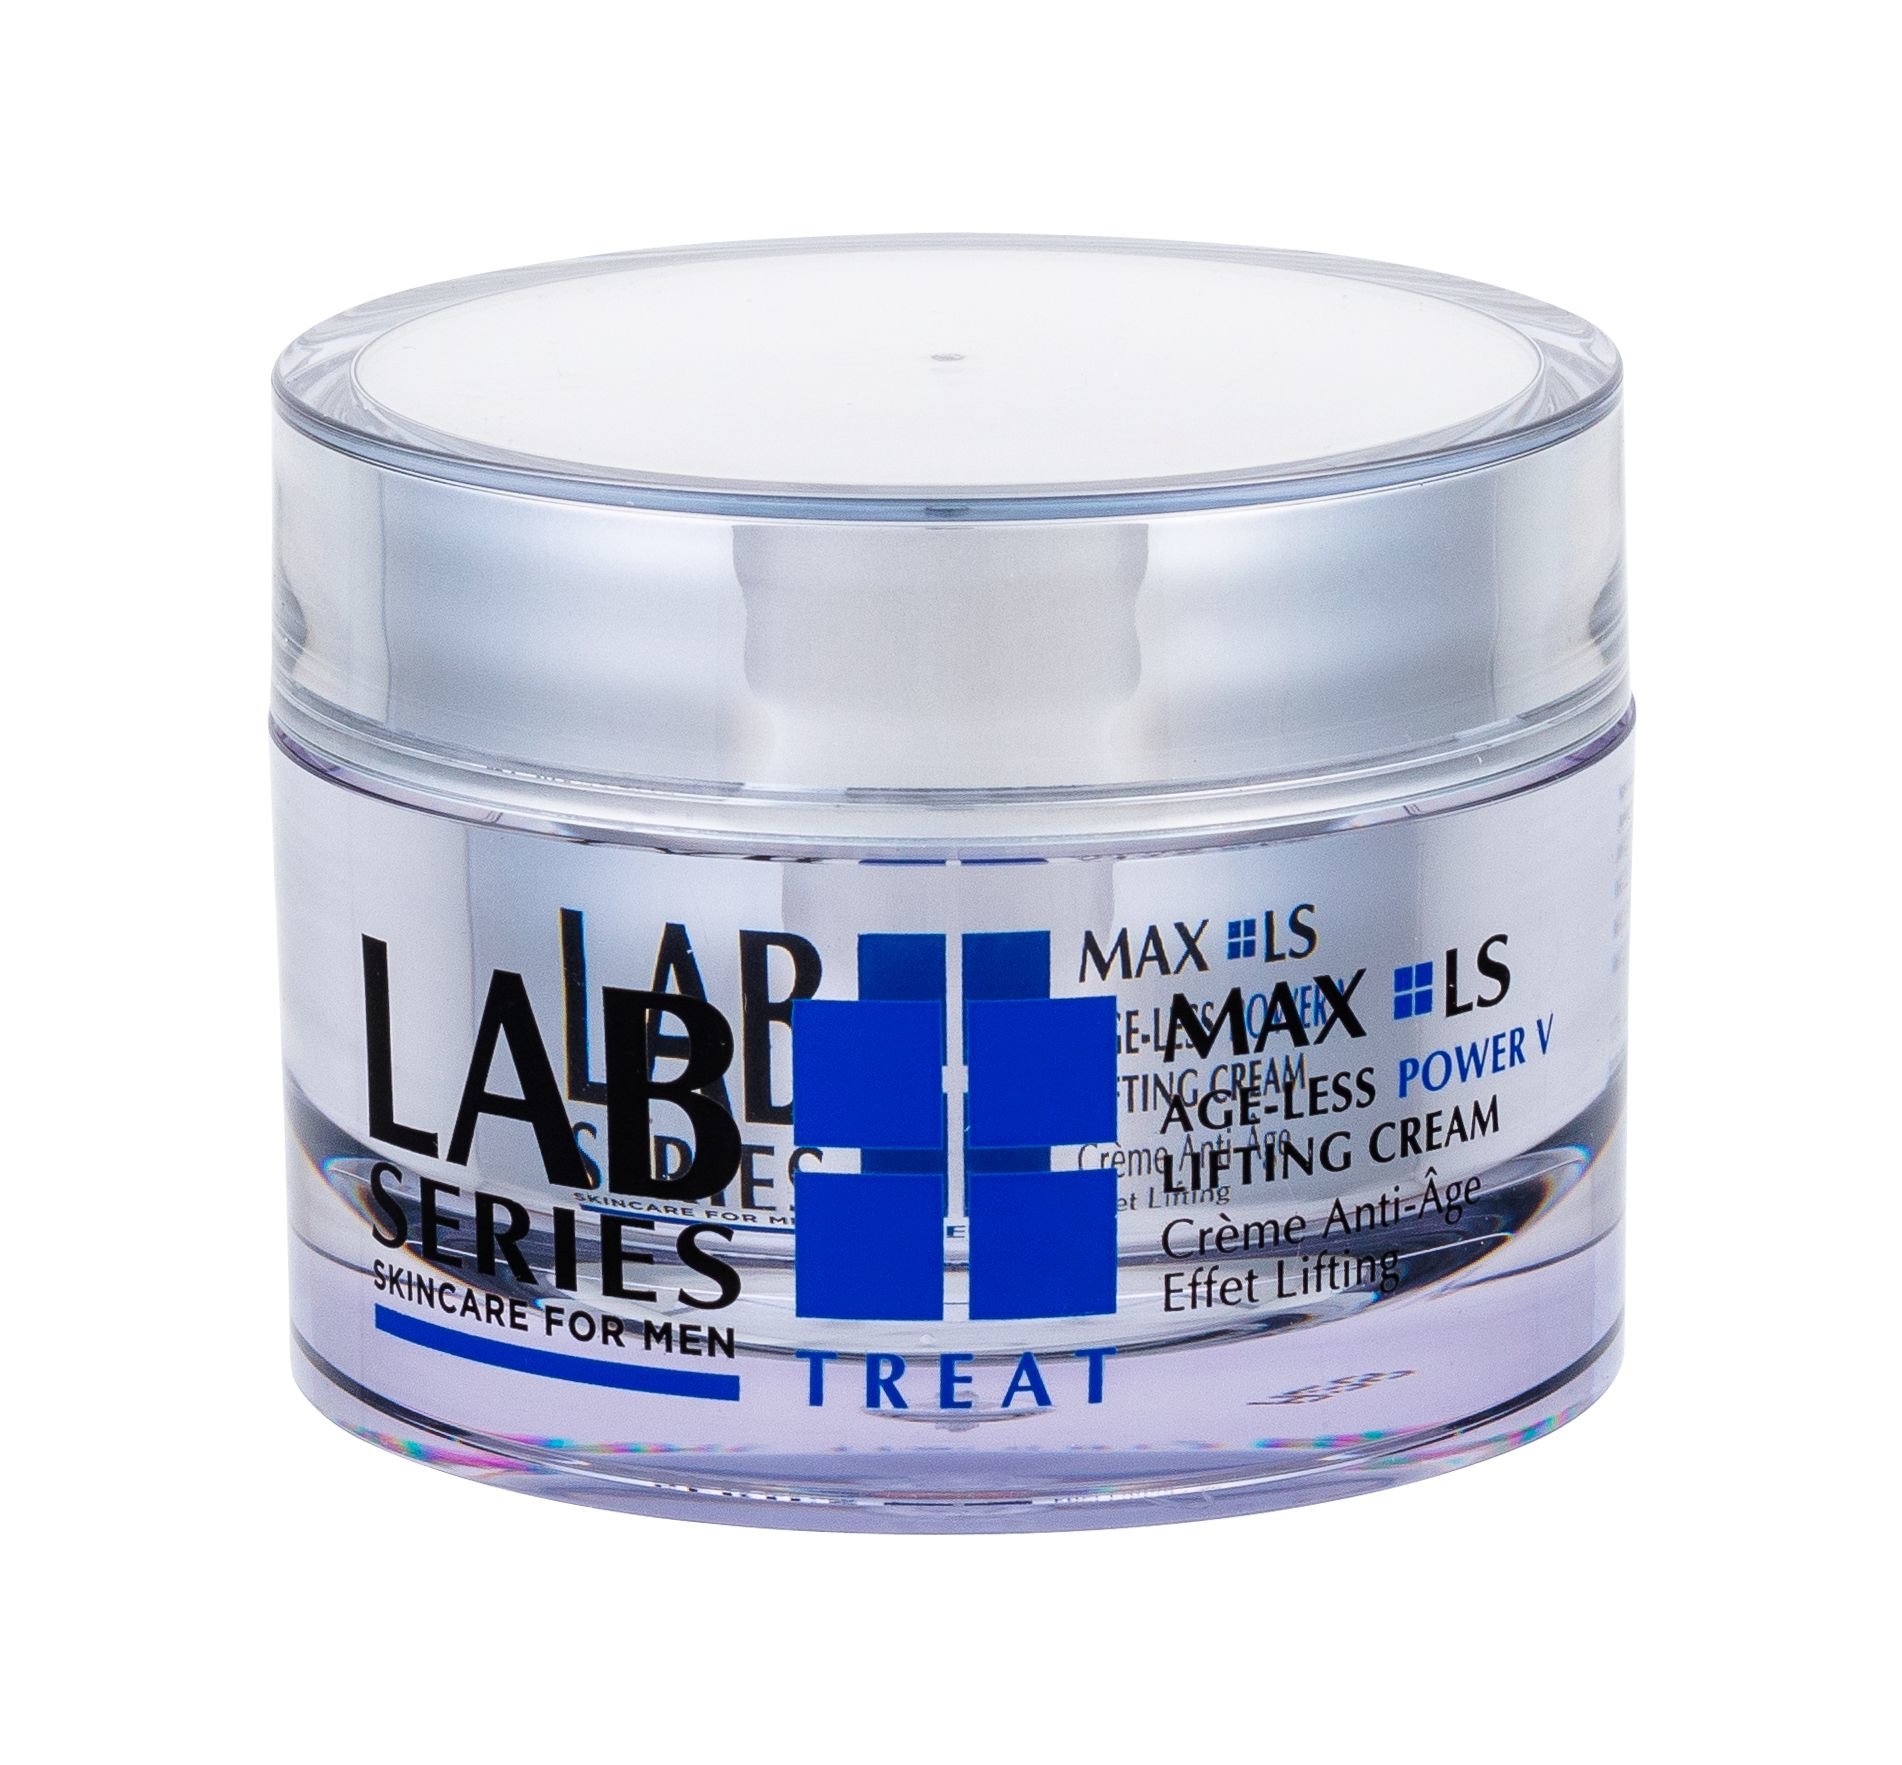 Lab Series MAX LS Age-Less Power V Lifting Cream dieninis kremas